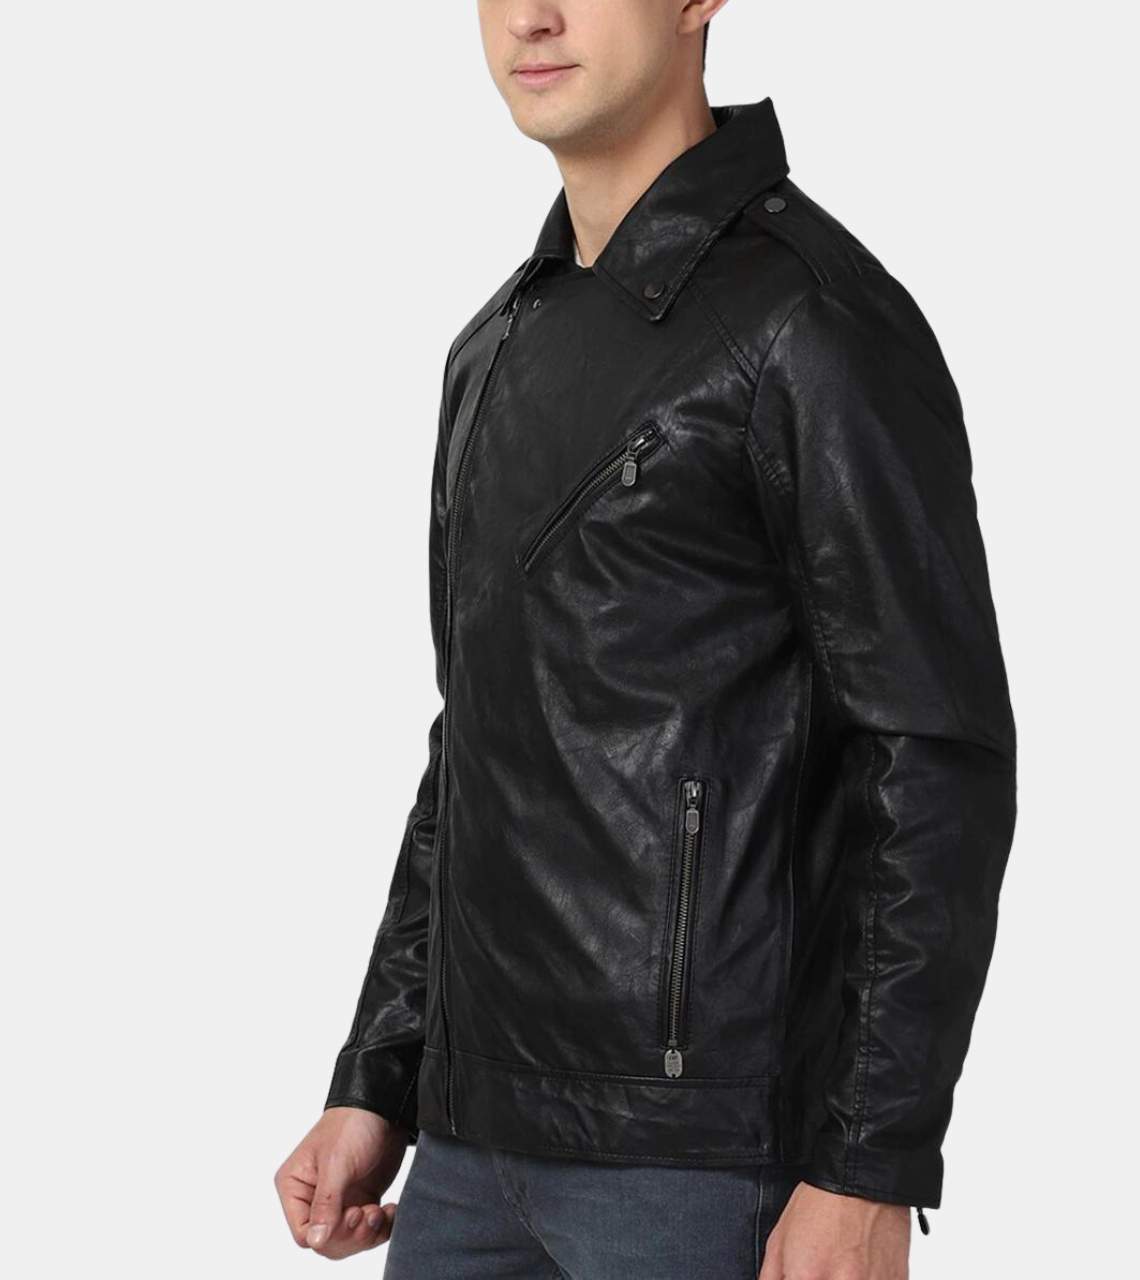 Eadwin Men's Black Biker's Leather Jacket